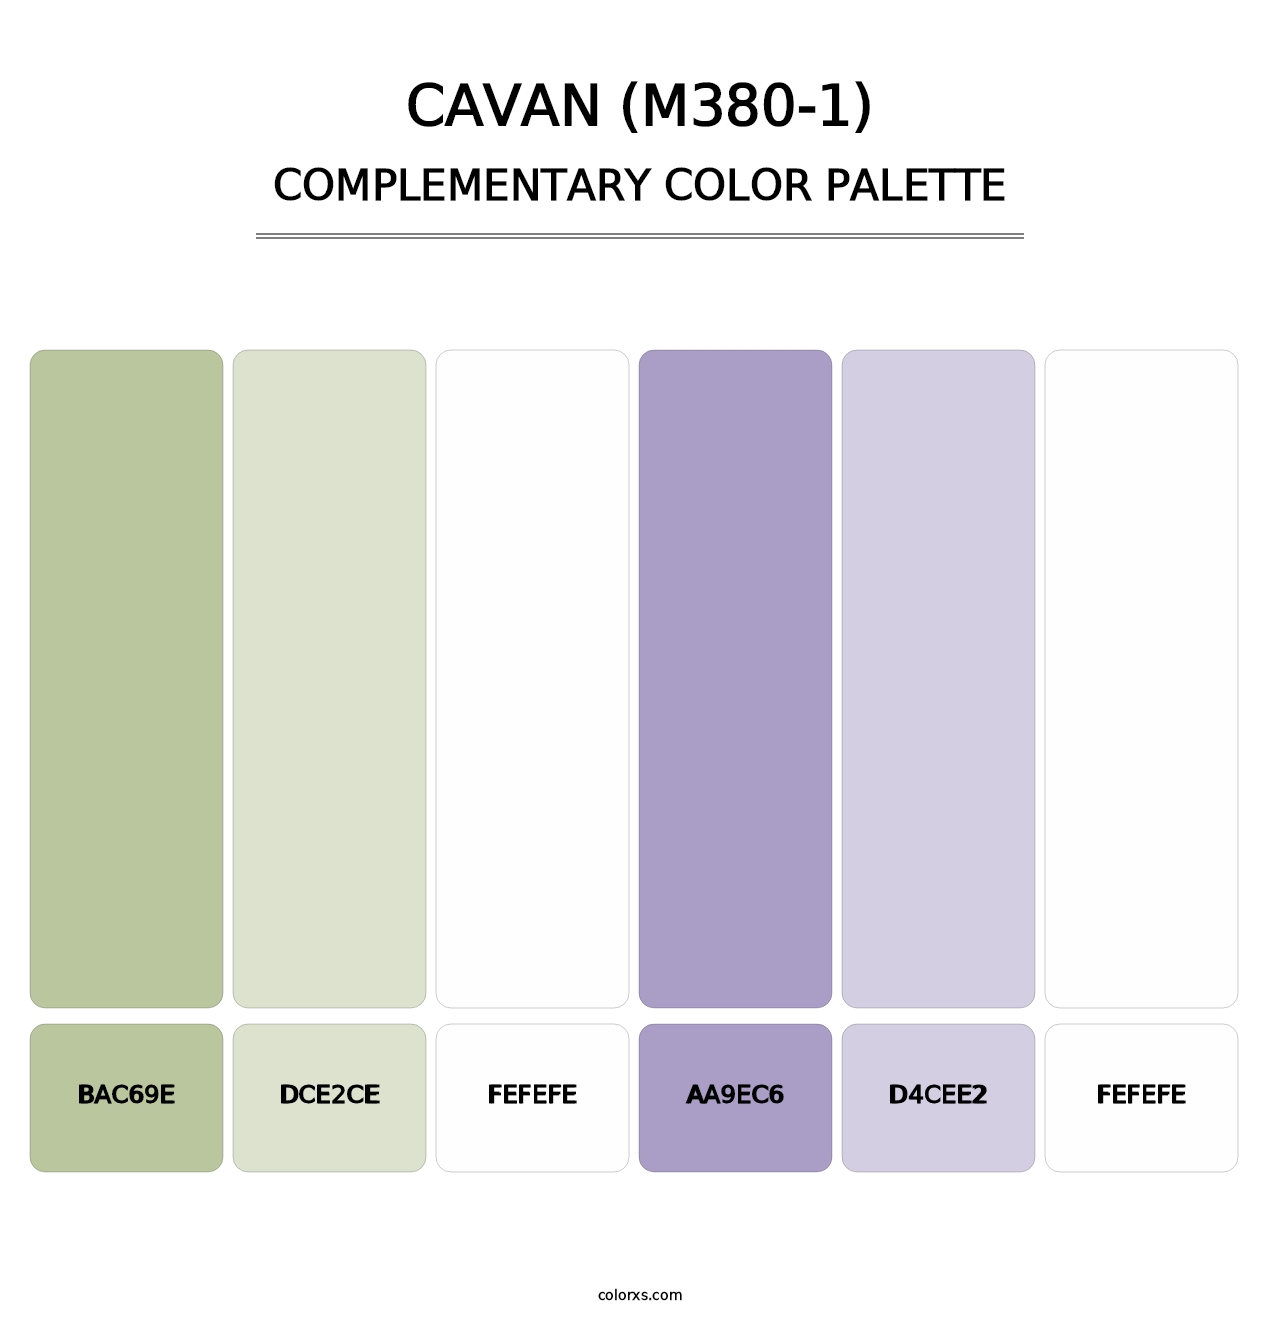 Cavan (M380-1) - Complementary Color Palette